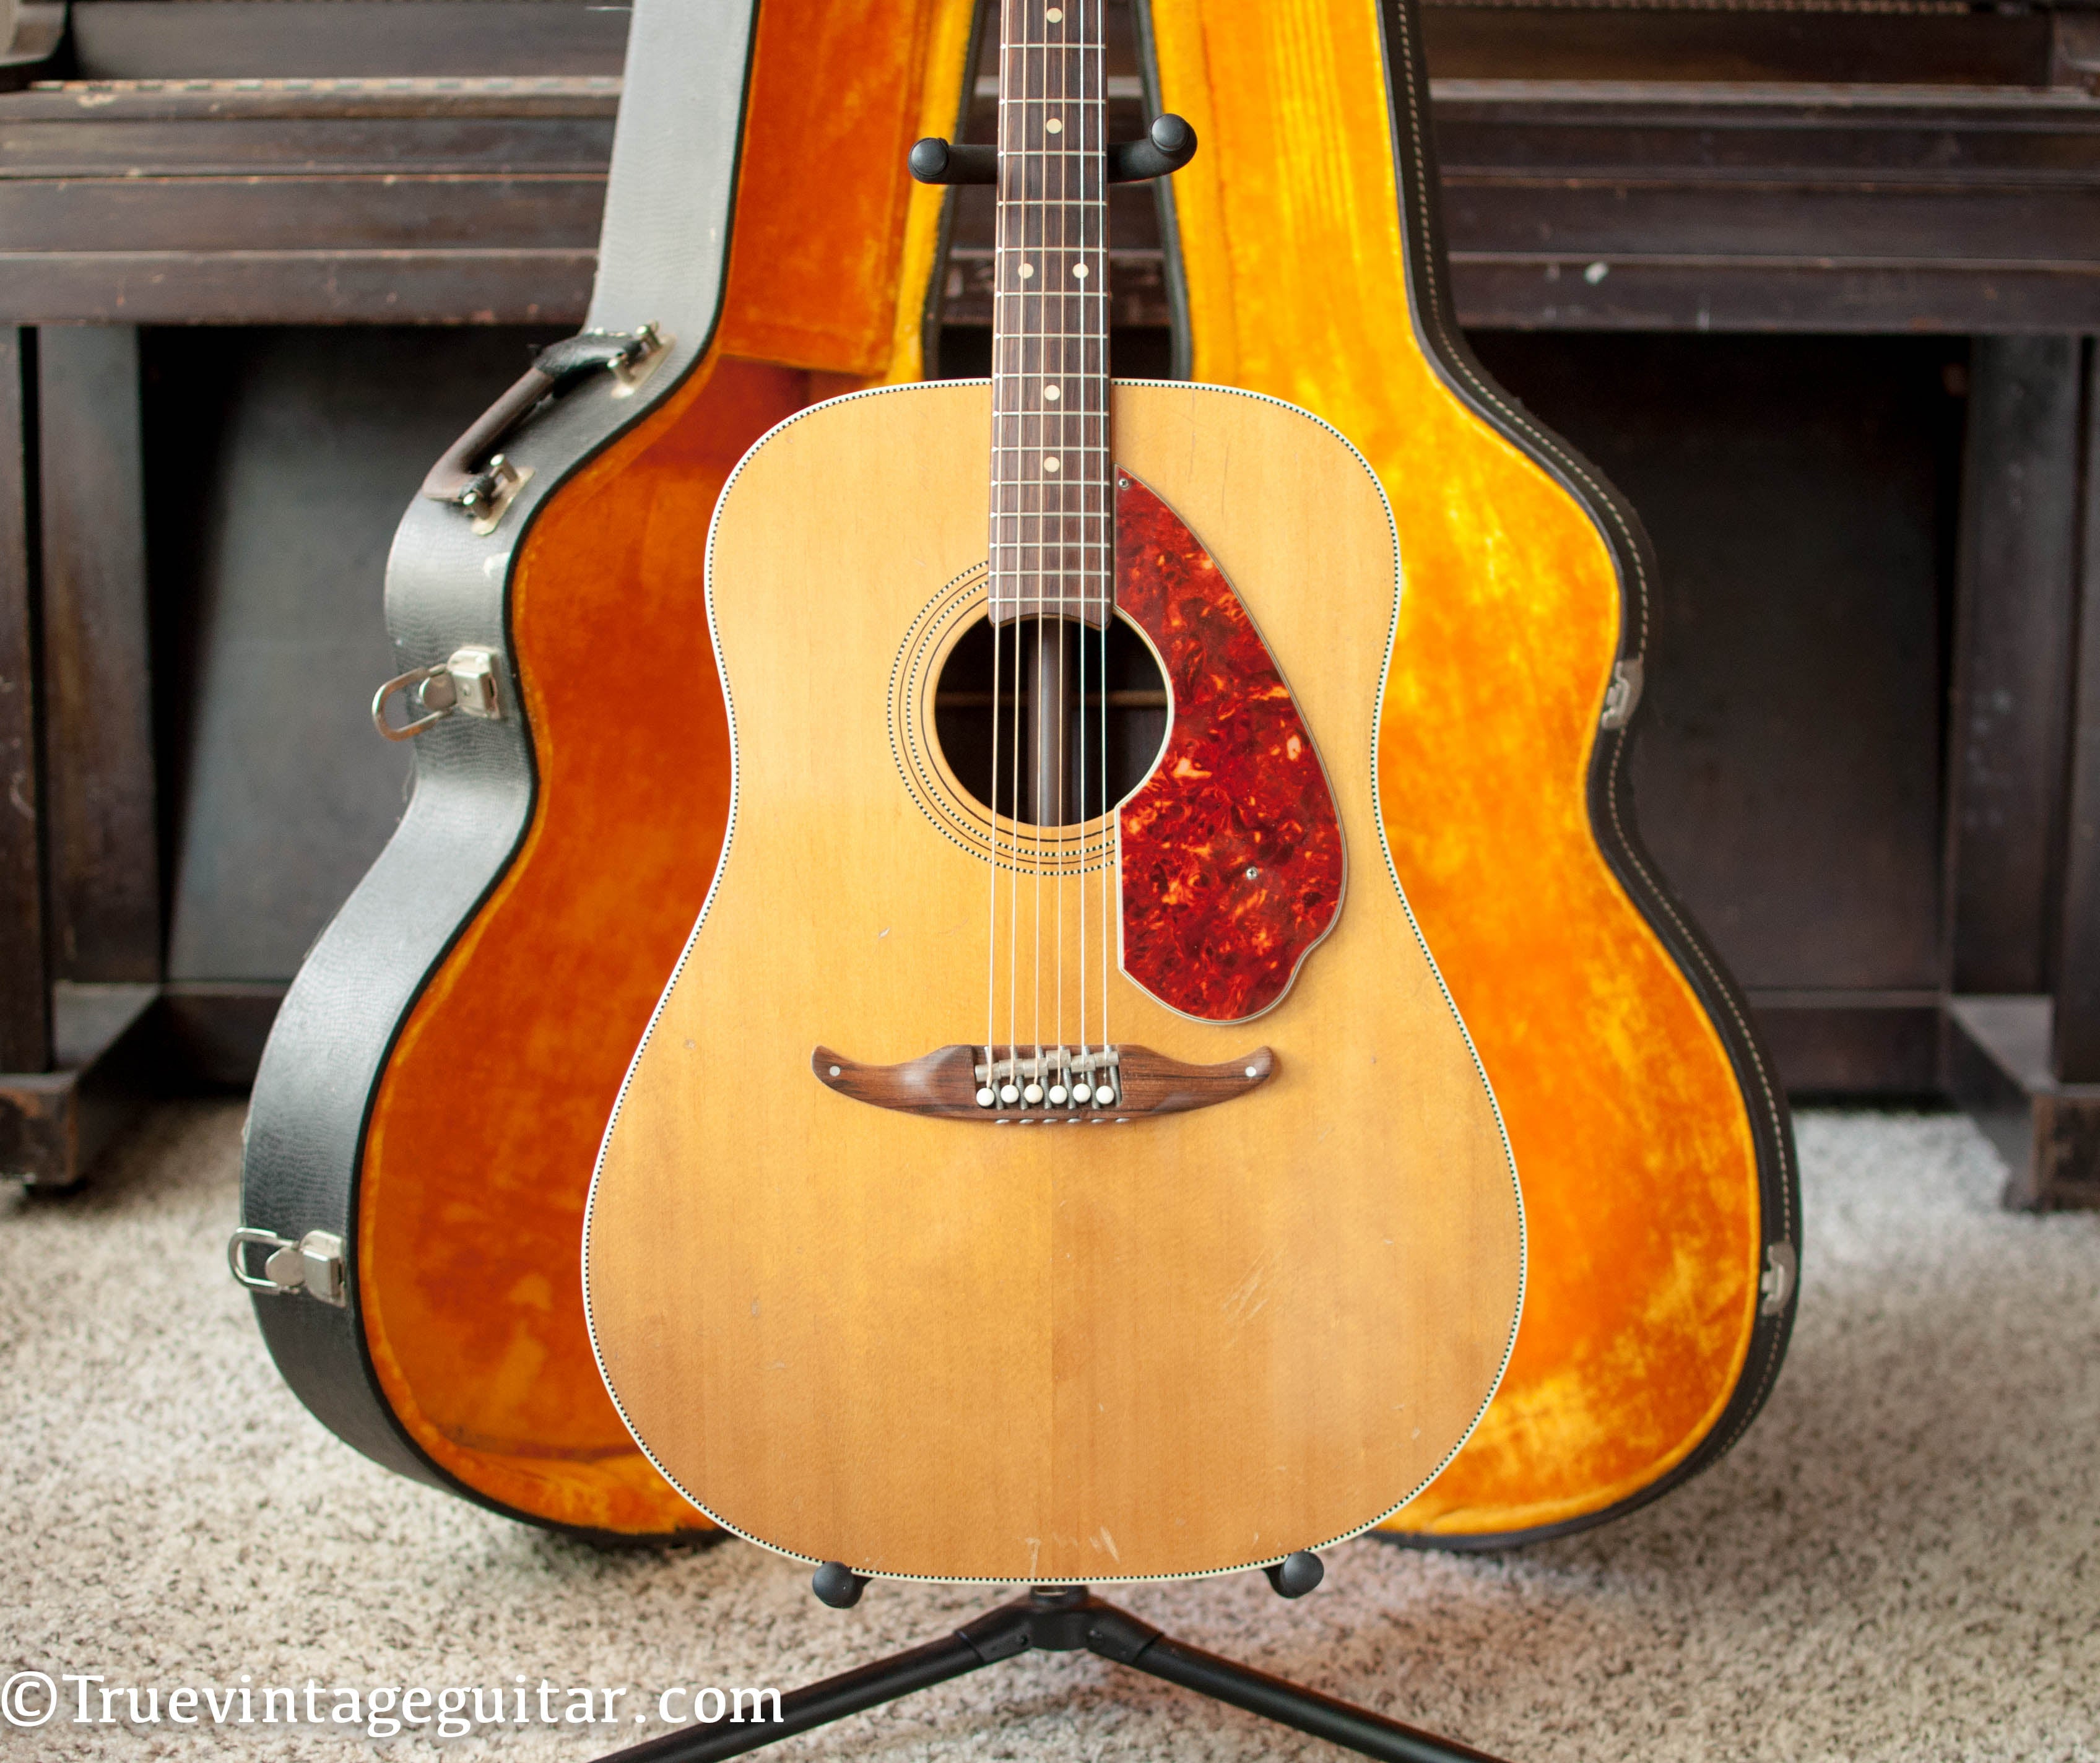 Vintage 1964 Fender King acoustic guitar